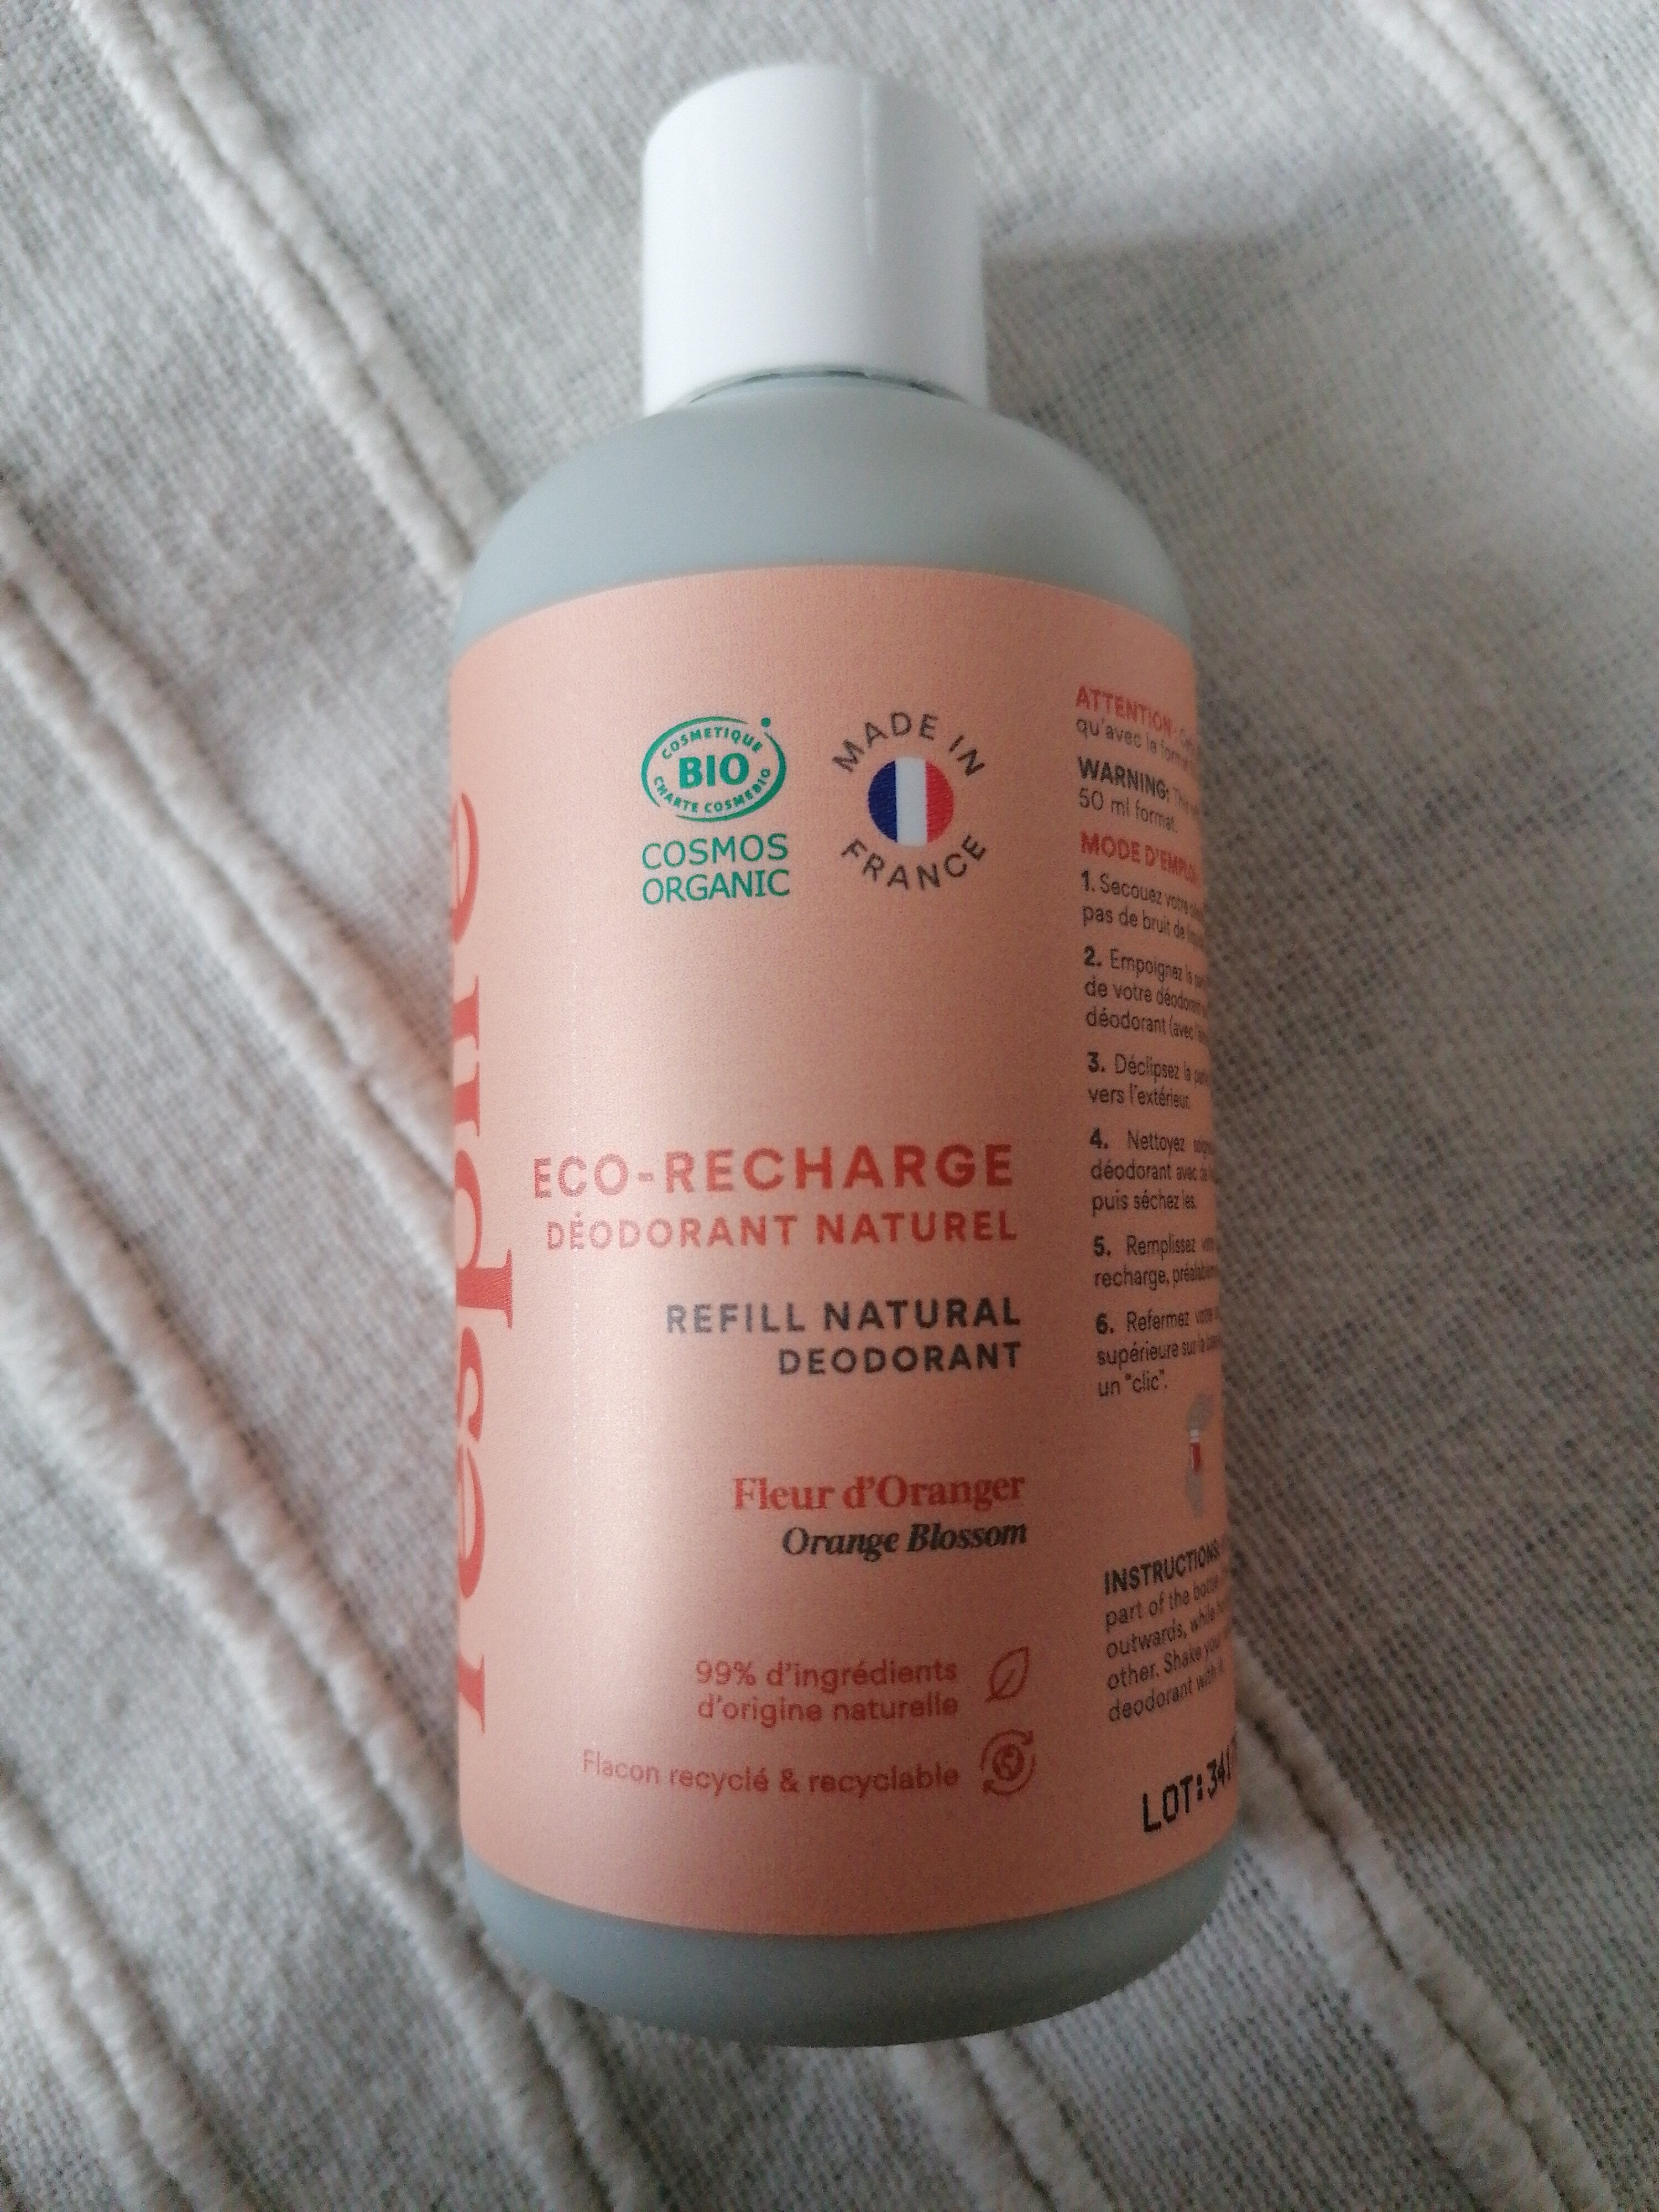 Eco-Recharge Déodorant naturel fleur d'oranger - Product - en